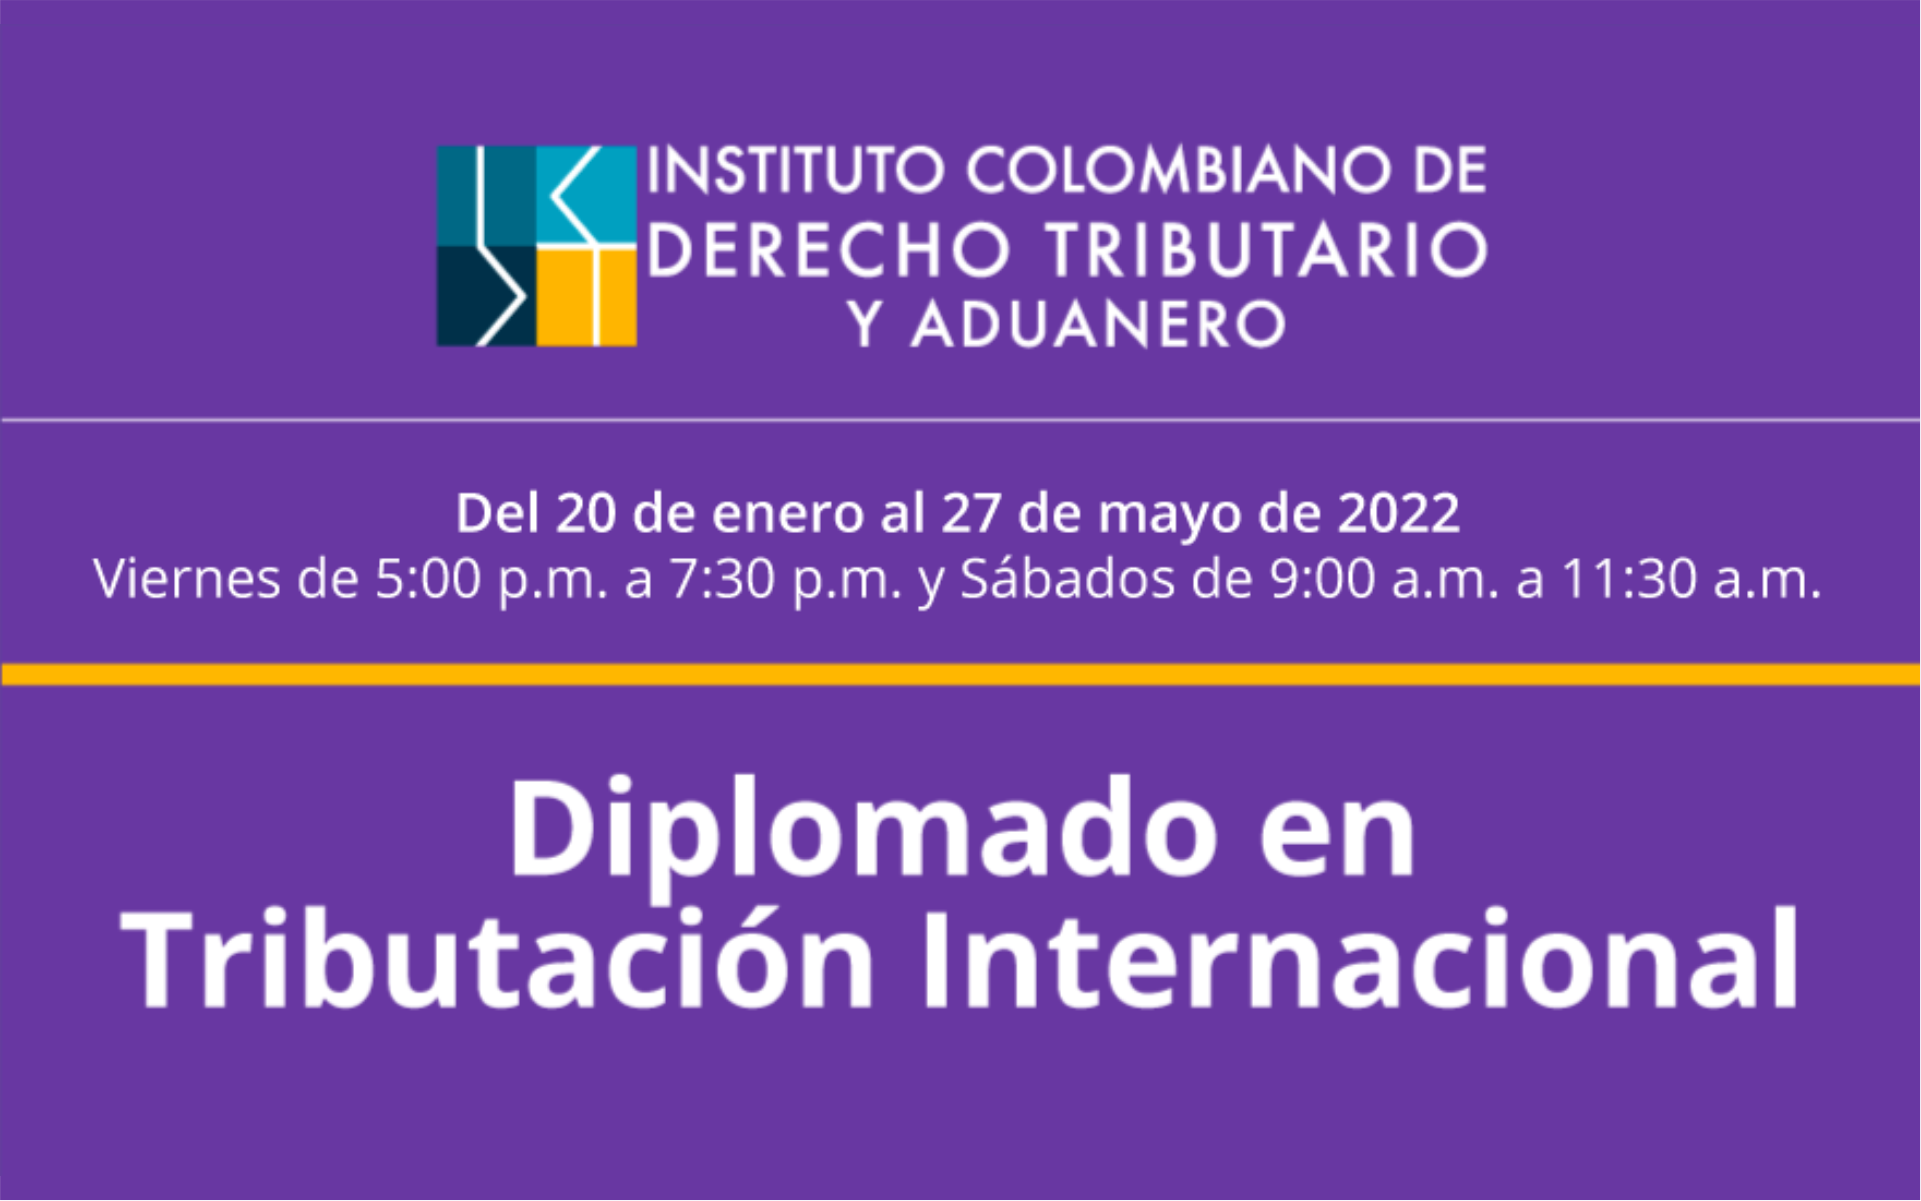 Diplomado-en-Tributacion-Internacional-del-Instituto-Colombiano-de-Derecho-Tributario